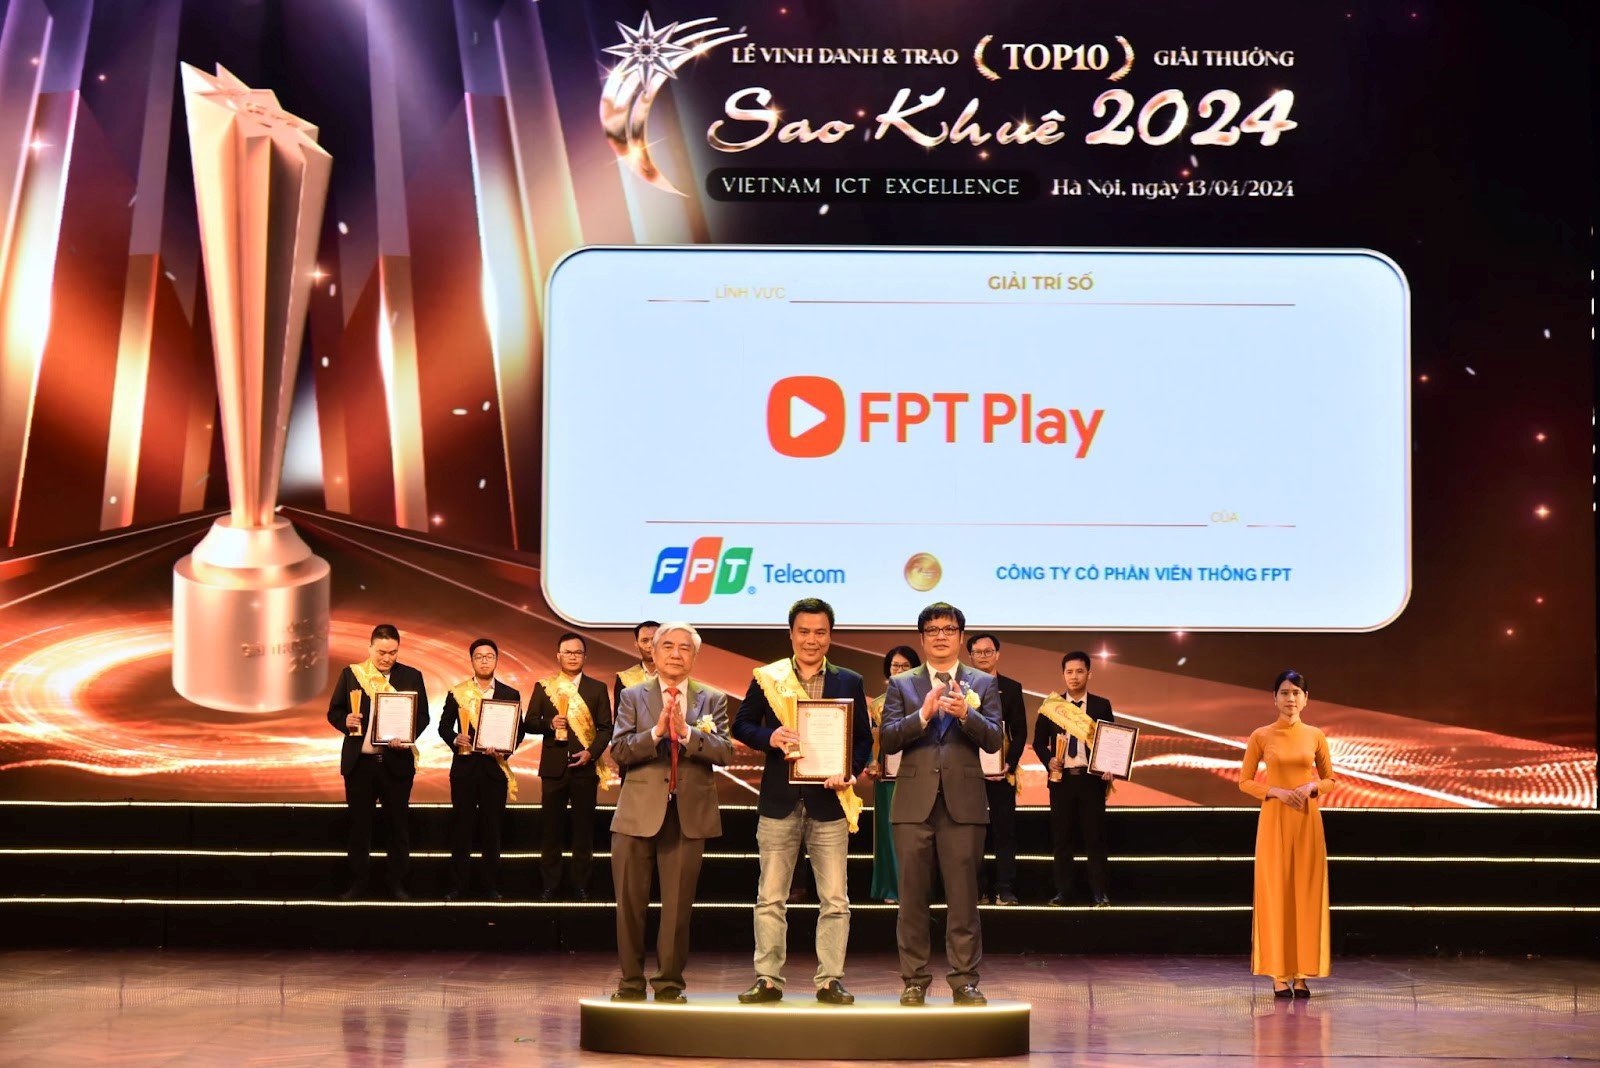 Ông Lê Thanh Bình - Giám đốc Kinh doanh Khu vực Hà Nội - Đại diện FPT Play lên nhận giải thưởng&nbsp;